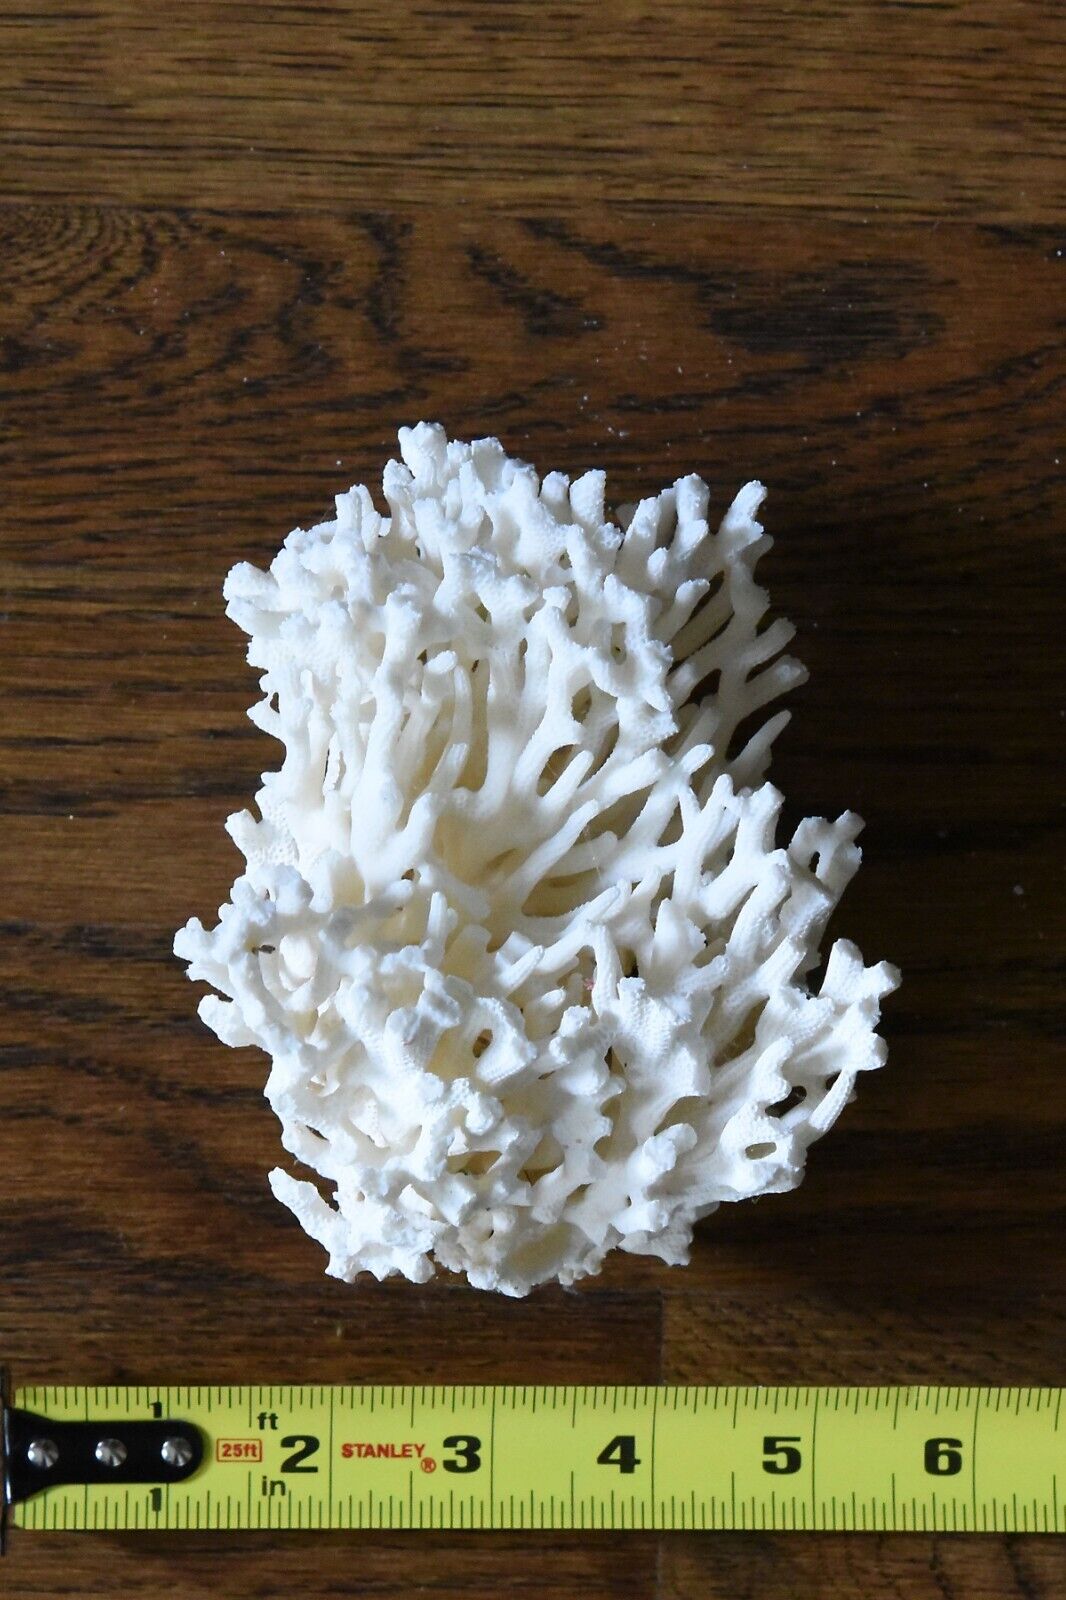 Real natural white coral for Aquarium or display